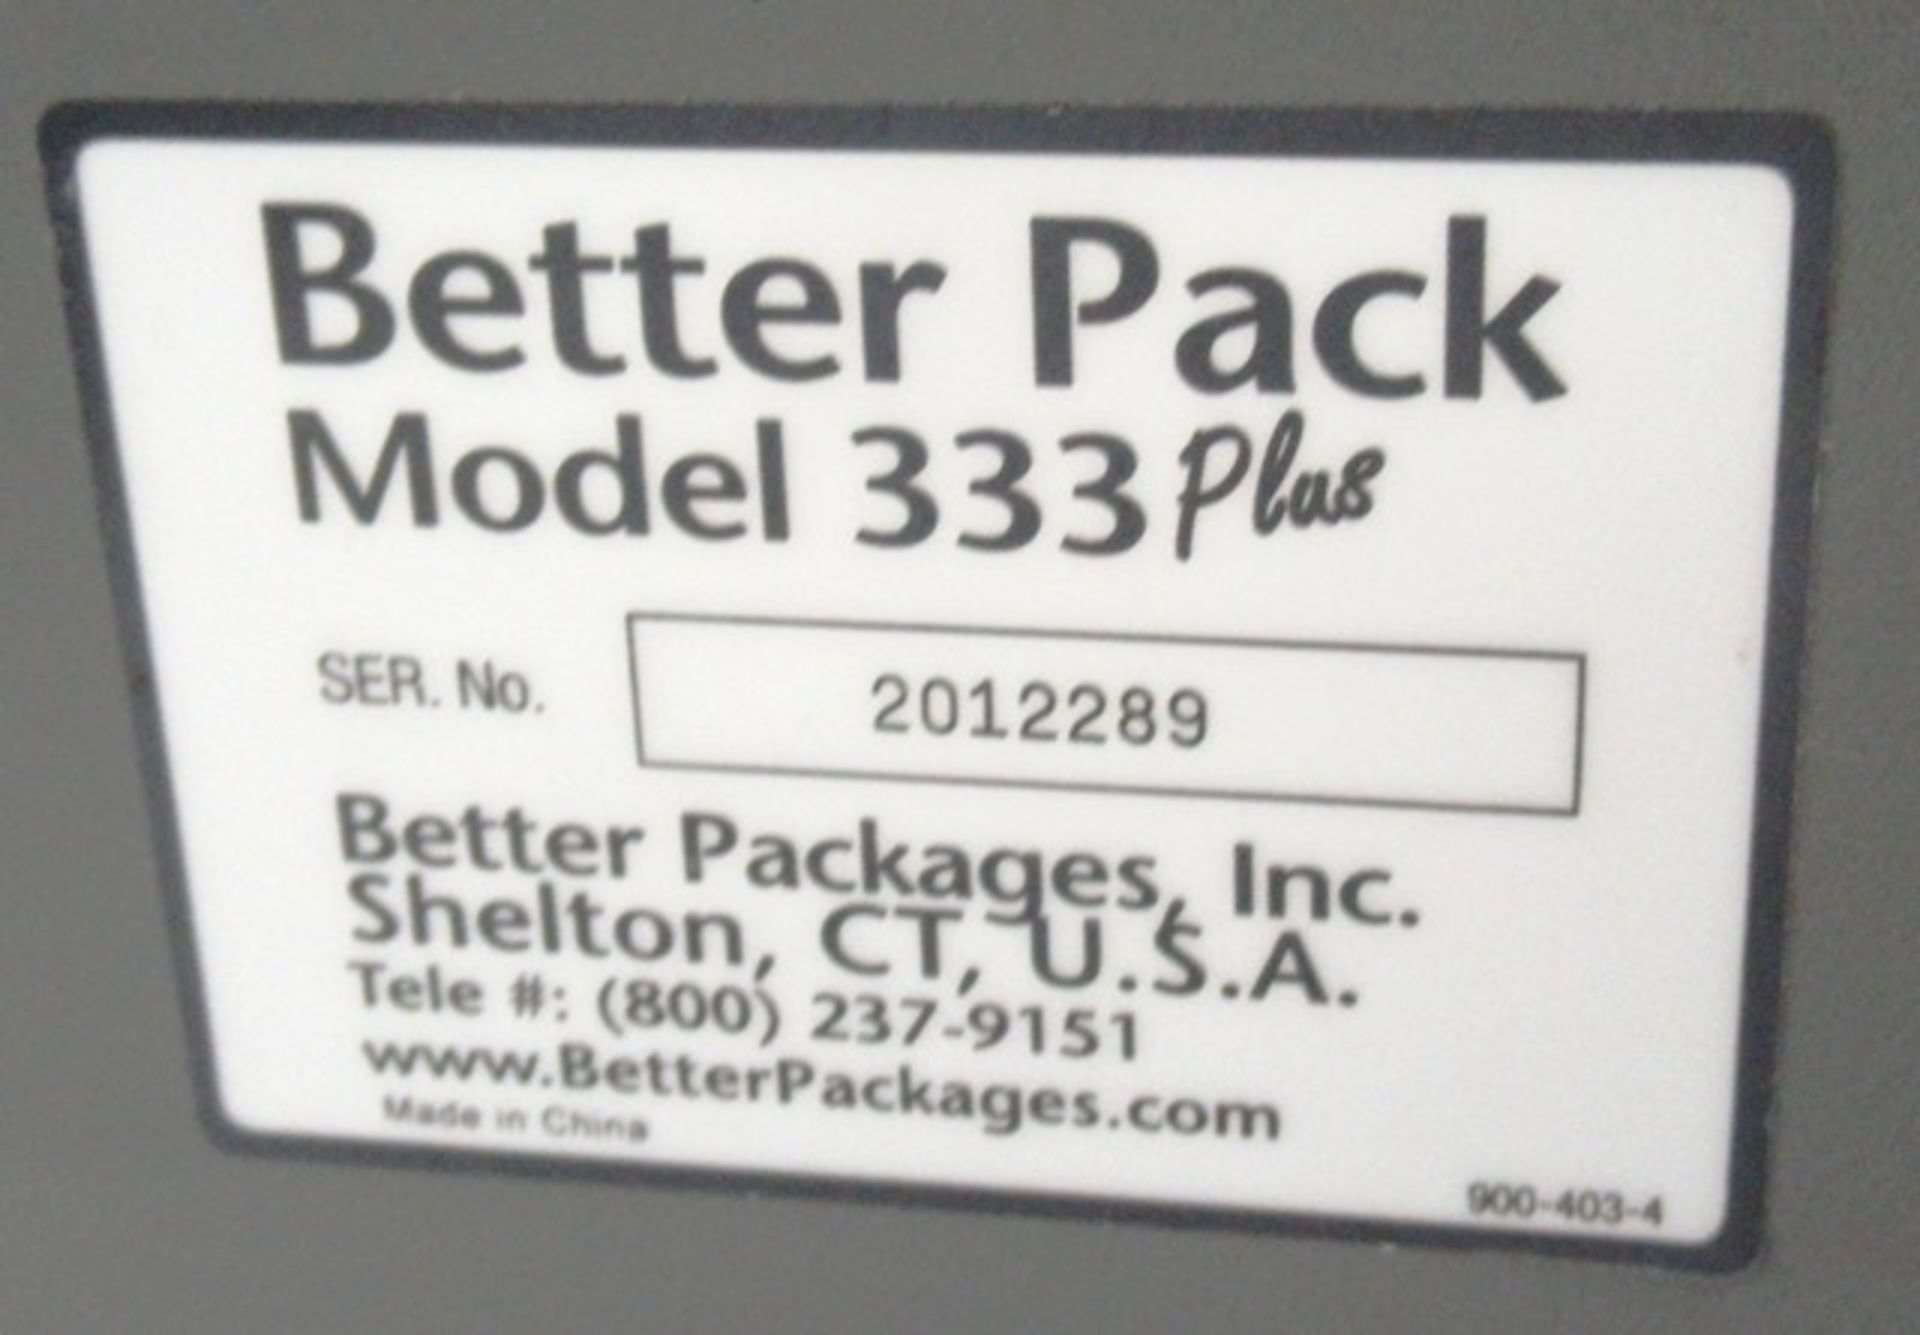 BETTER PACK MODEL 3333 PLUS TAPE DISPENSER - Image 2 of 2